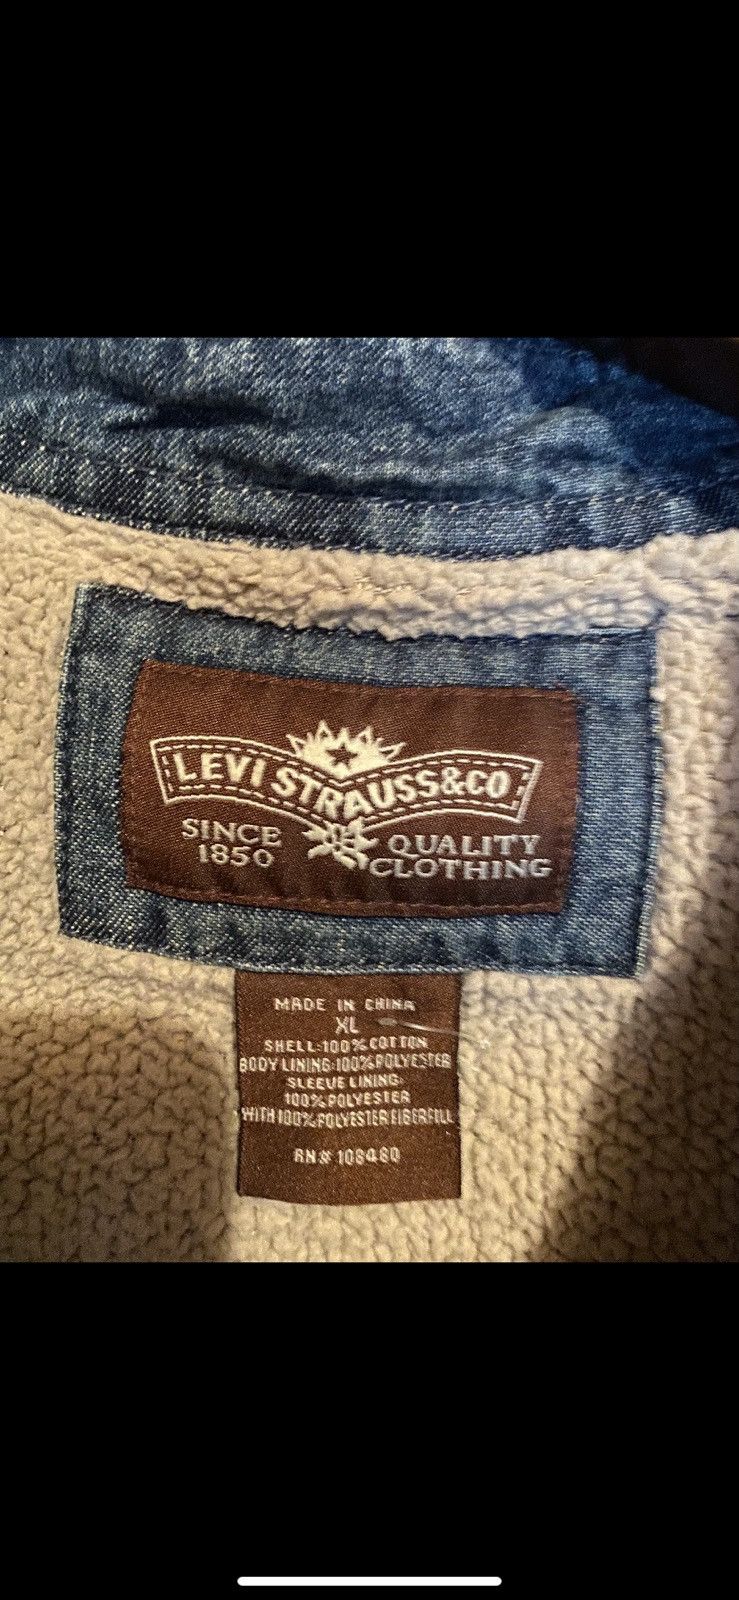 Levi's Vintage Clothing Vintage LEVIS SHERPA Blue Denim Jean Jacket Size US XL / EU 56 / 4 - 3 Preview